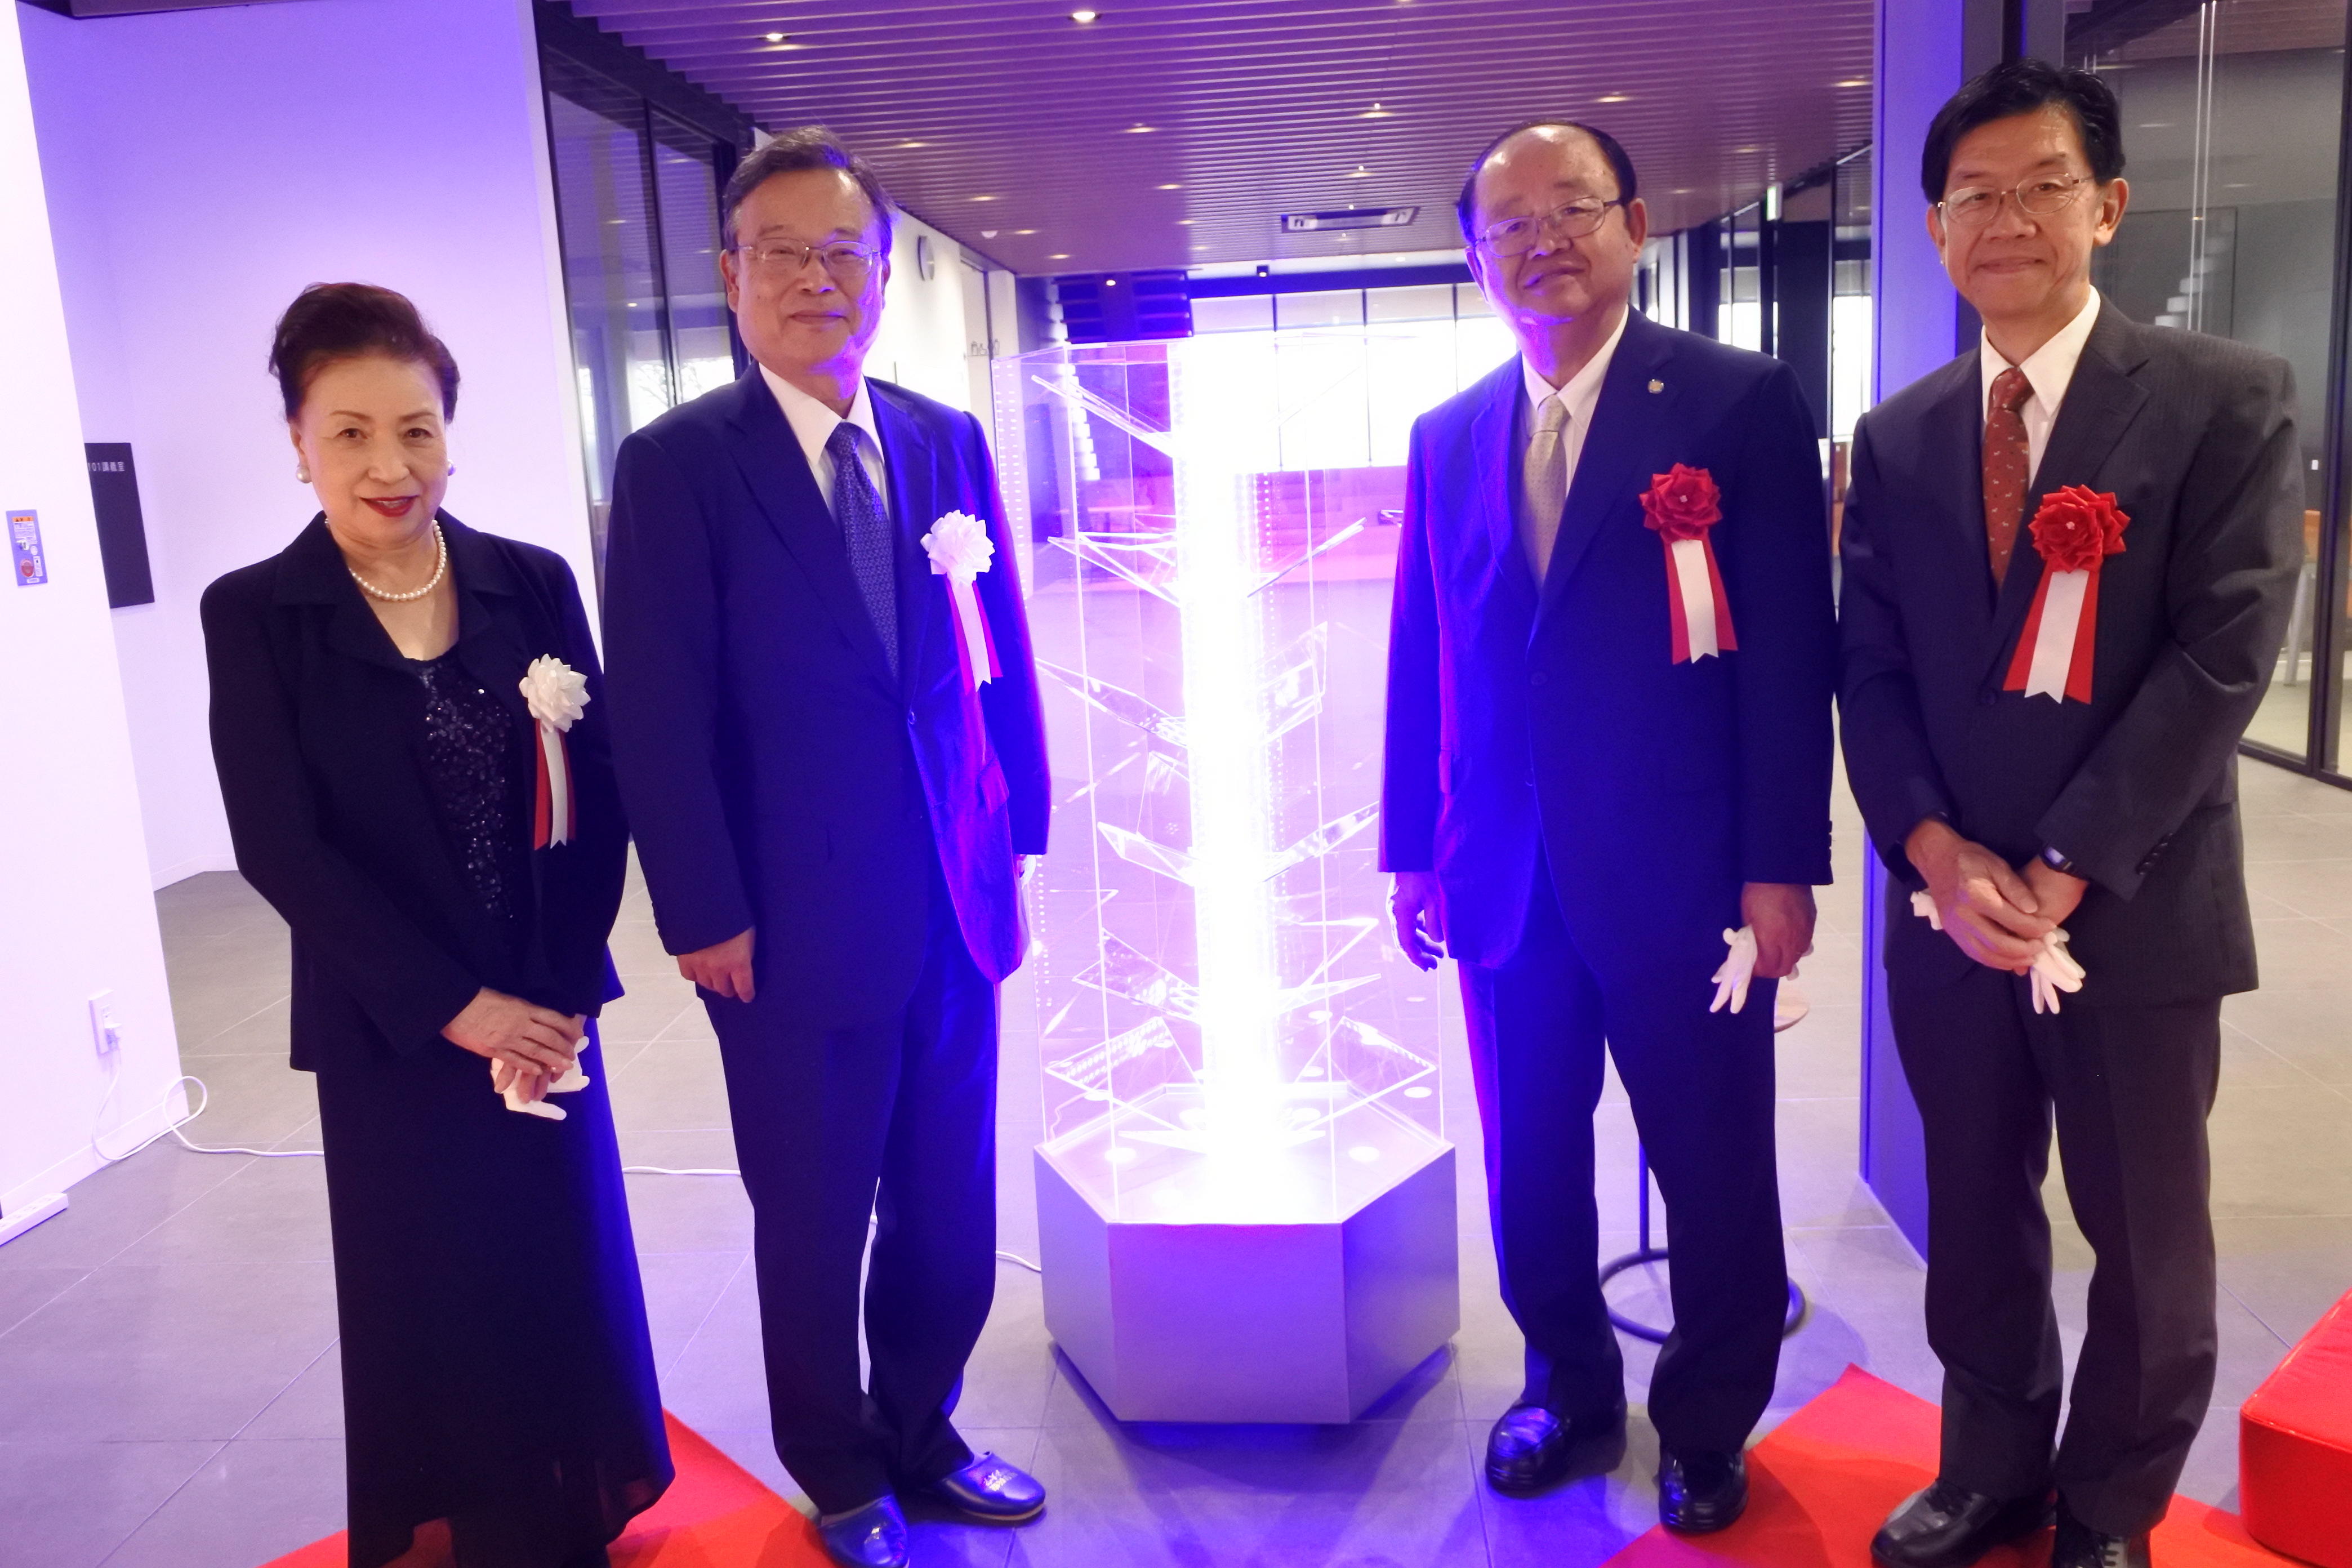 「青い輝跡Ⅱ」と（左から）神野公子名誉理事長、山田弘幸理事長、立花貞司理事長、平松正行理事